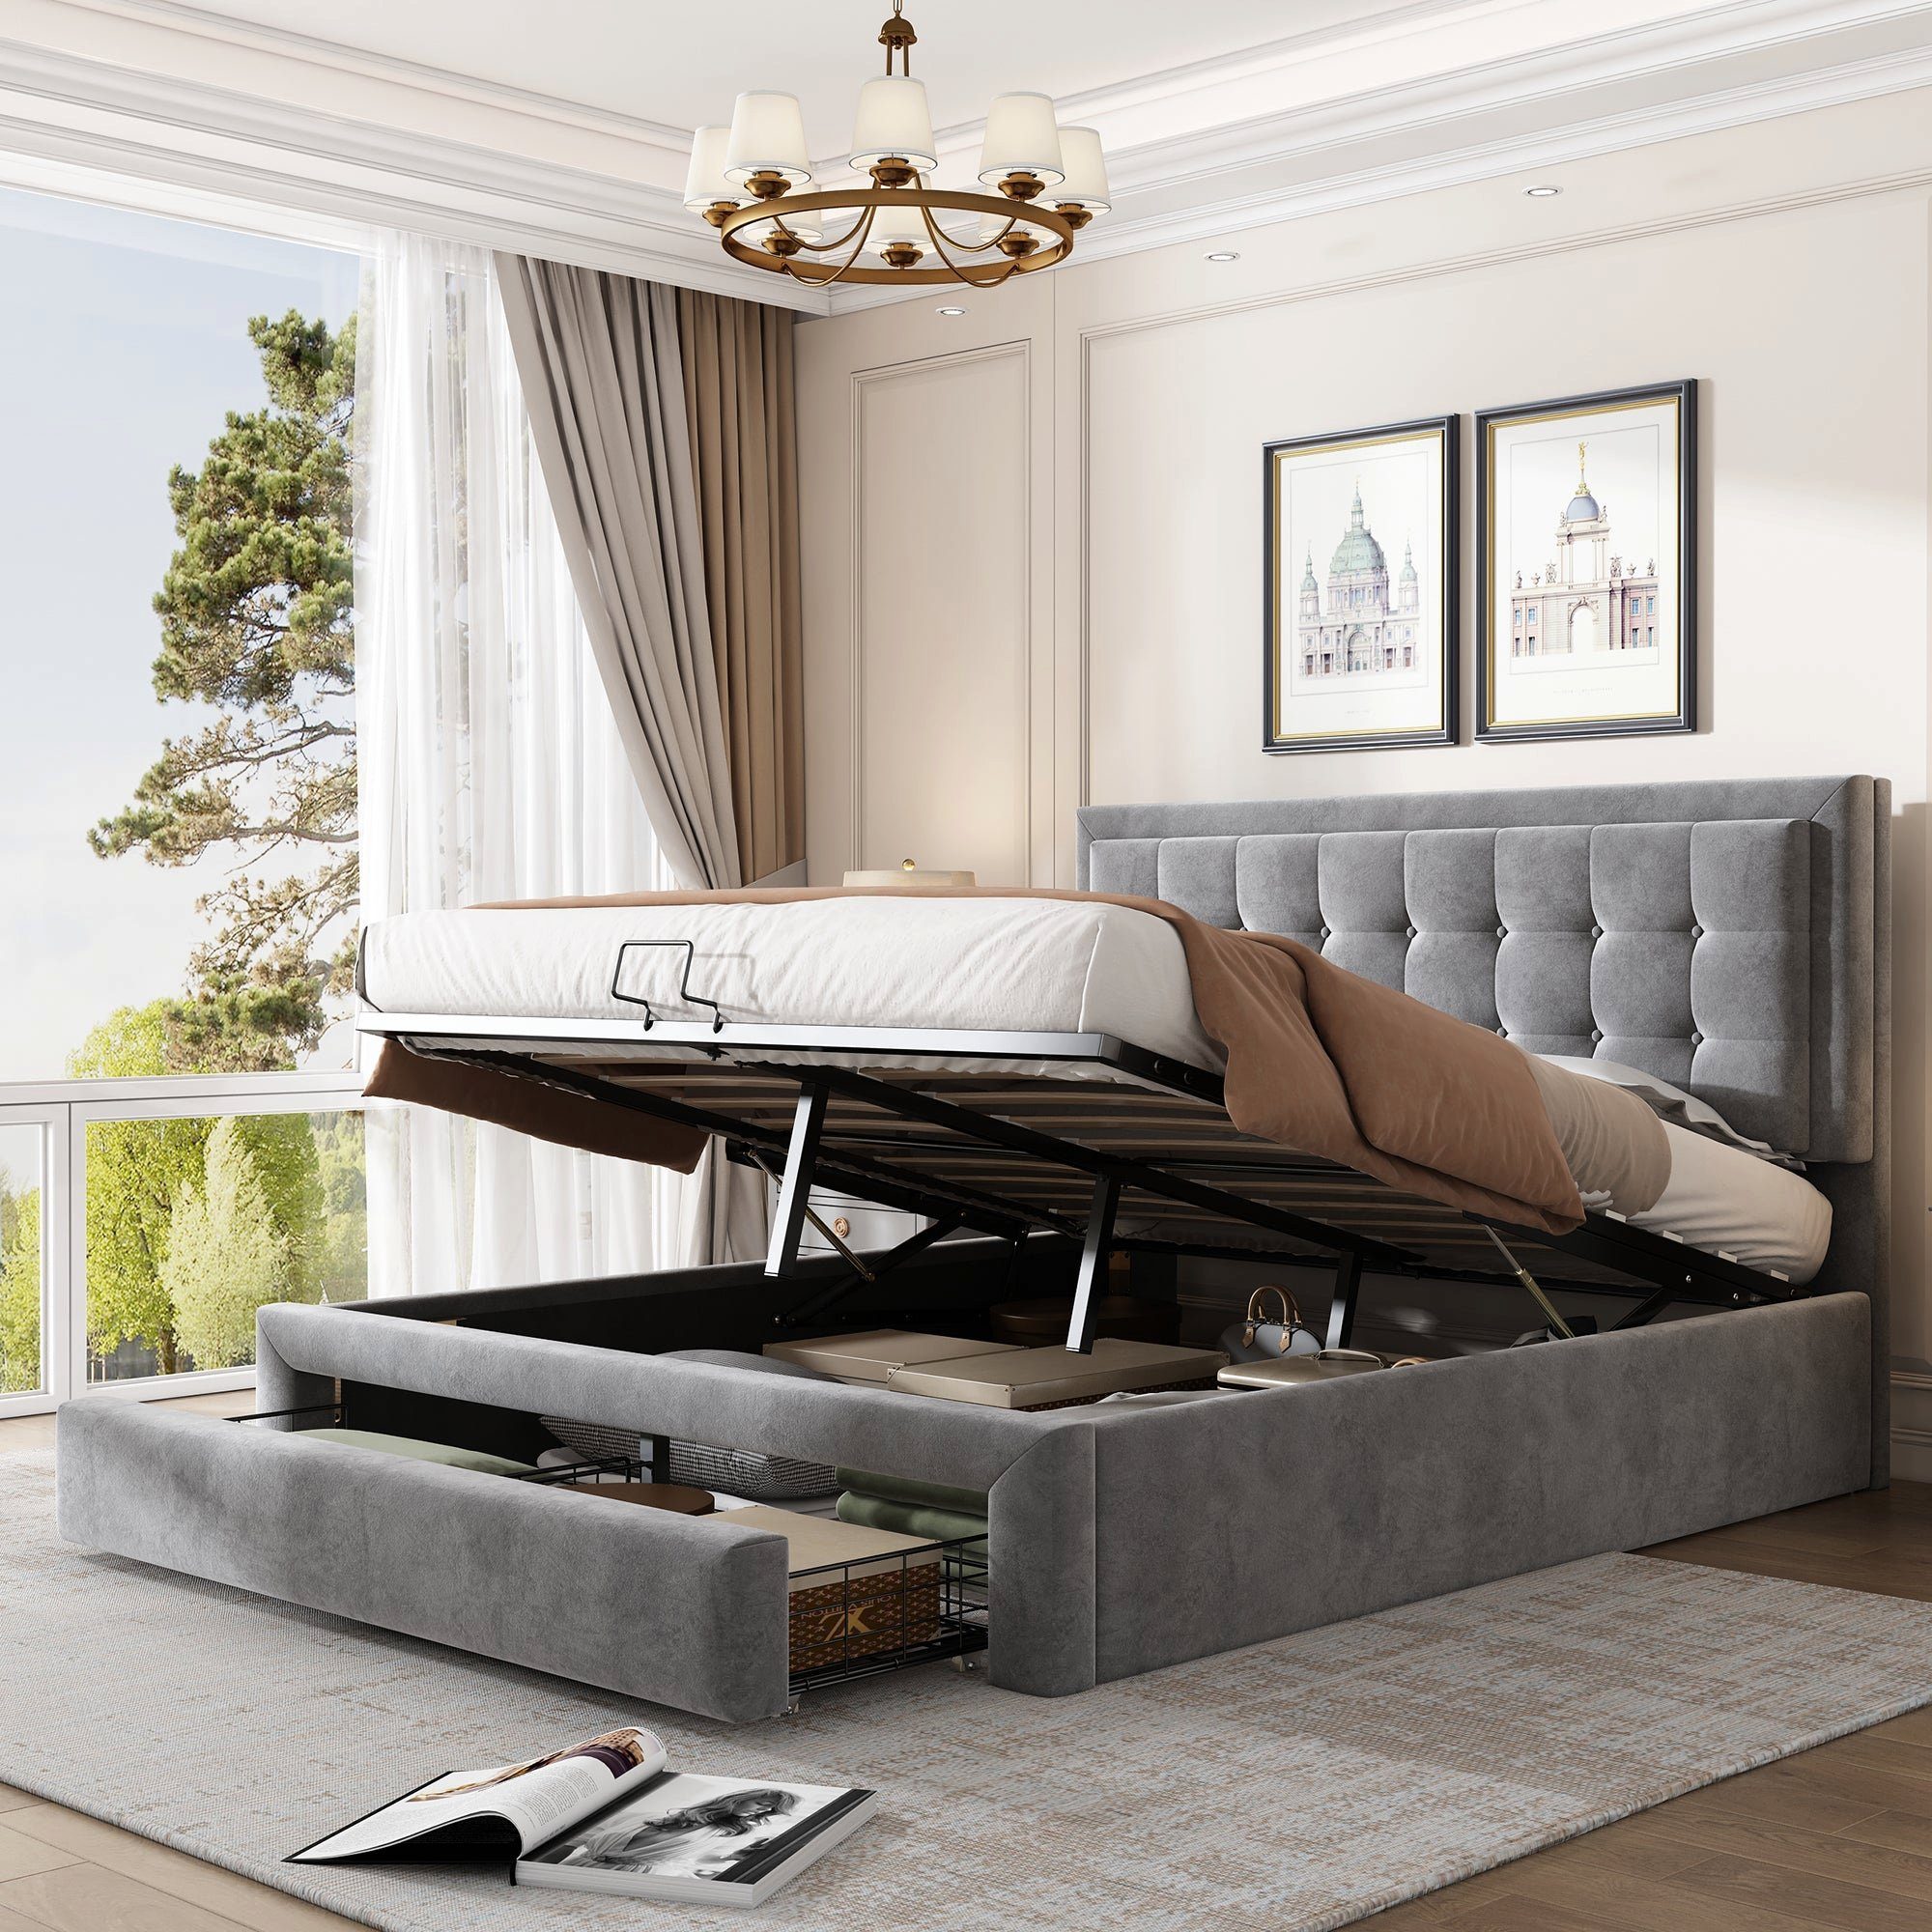 BUMHUM Bett Bett mit Kasten und Schubladen (Samtstoff Polsterbett  Lattenrost Doppelbett großer), Stauraum( 140 x 200 Grau)